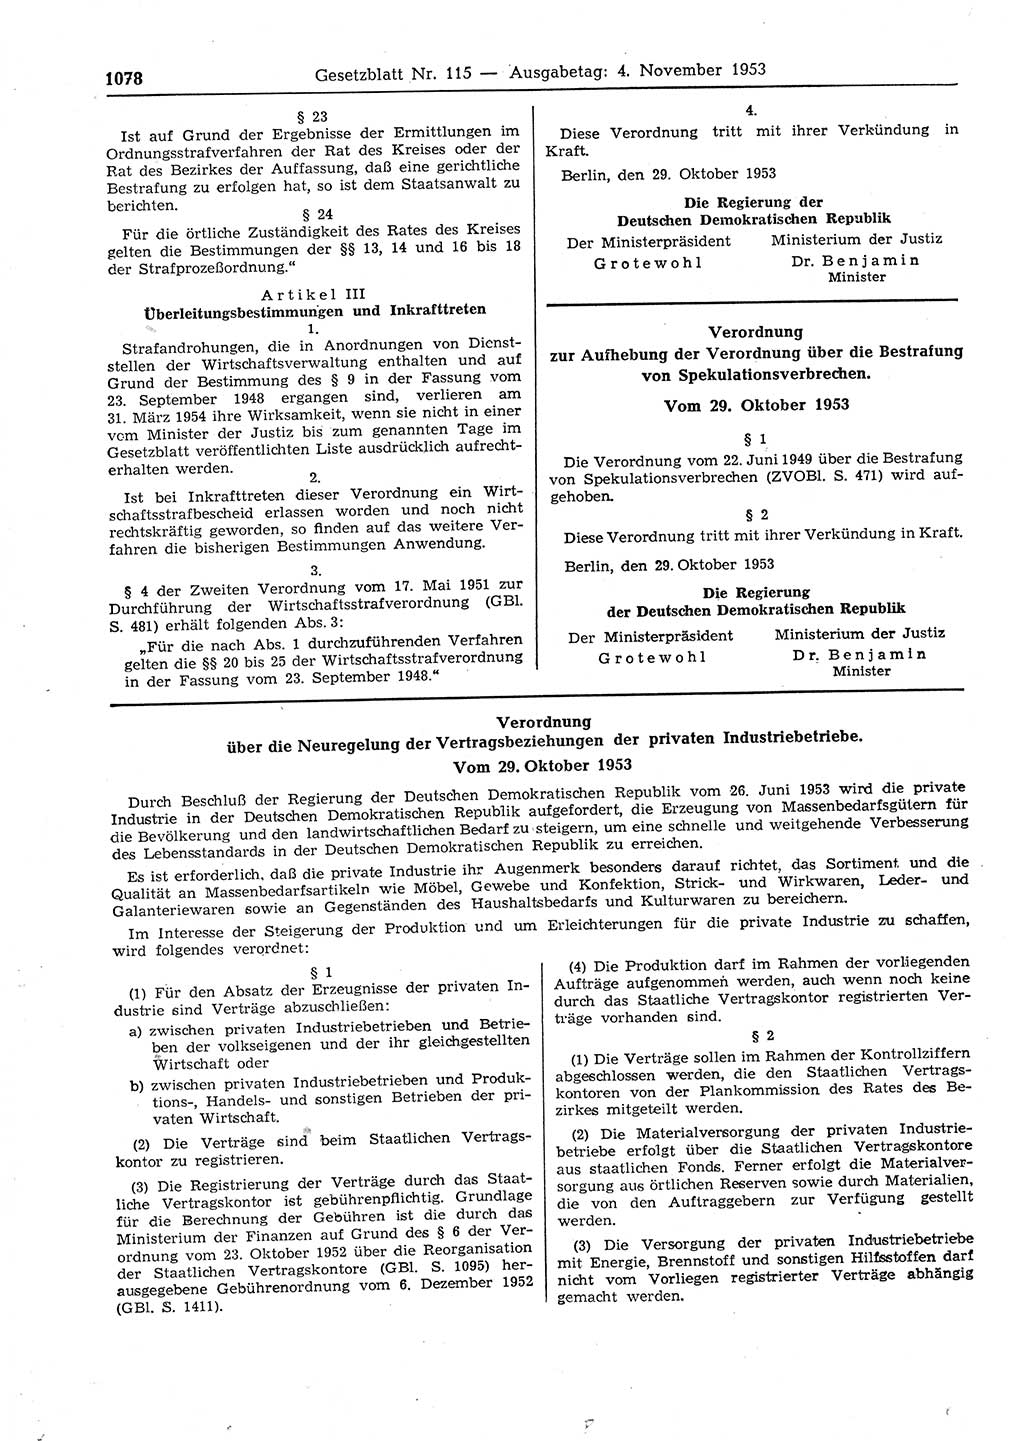 Gesetzblatt (GBl.) der Deutschen Demokratischen Republik (DDR) 1953, Seite 1078 (GBl. DDR 1953, S. 1078)